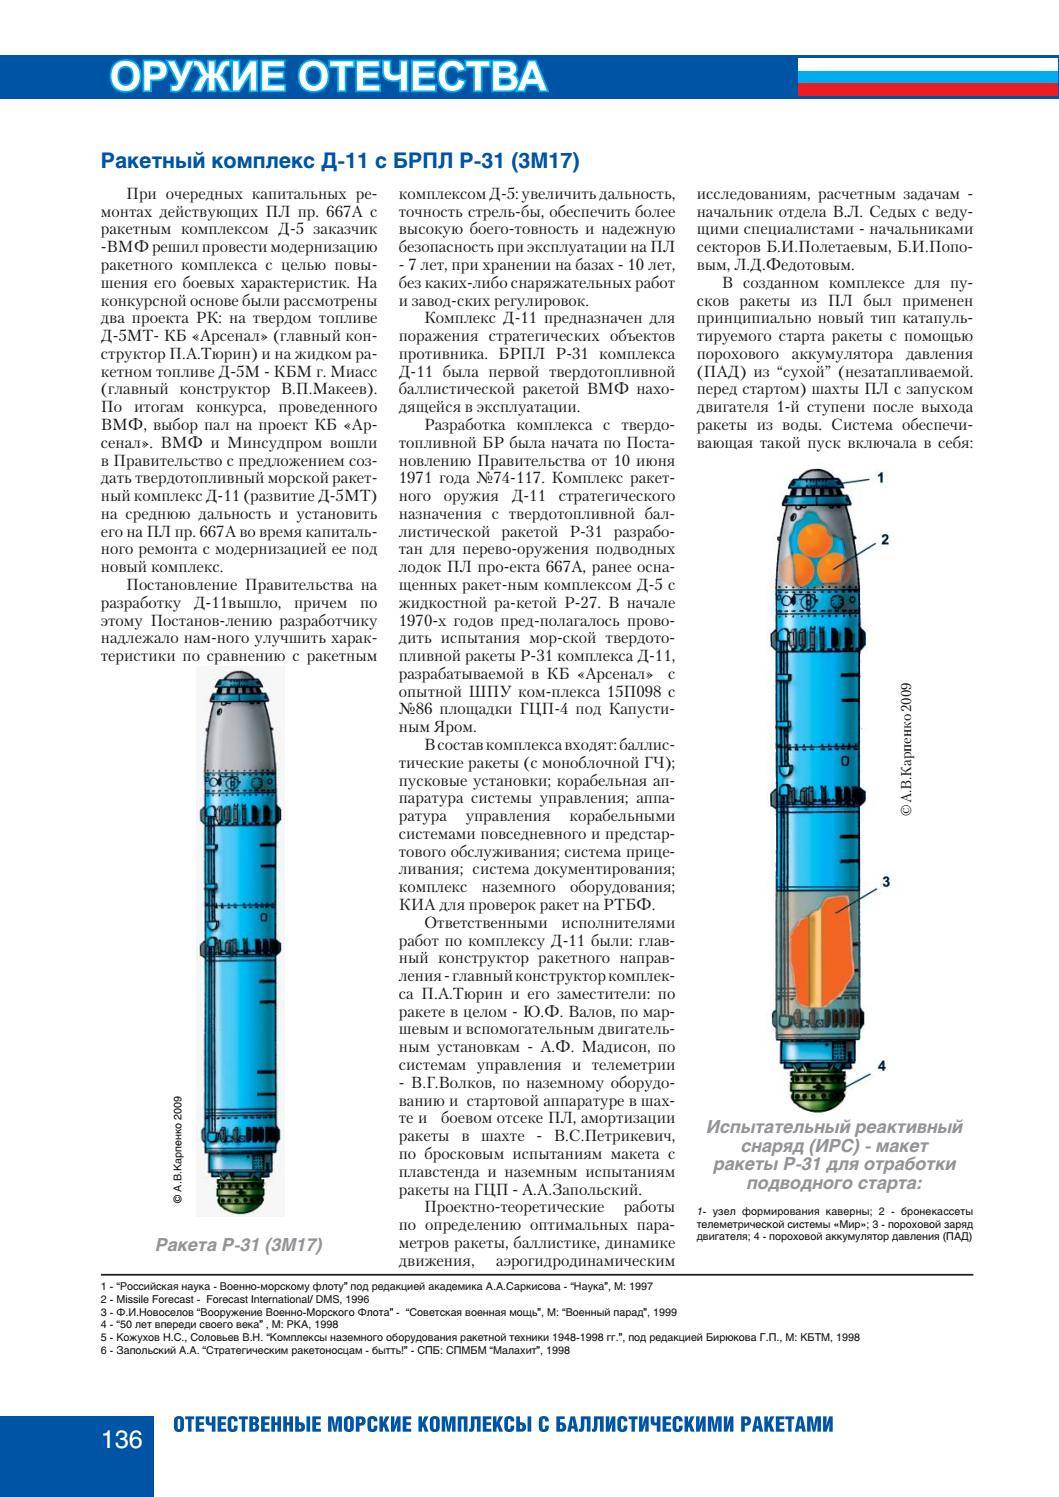 Р-31 (ракета)